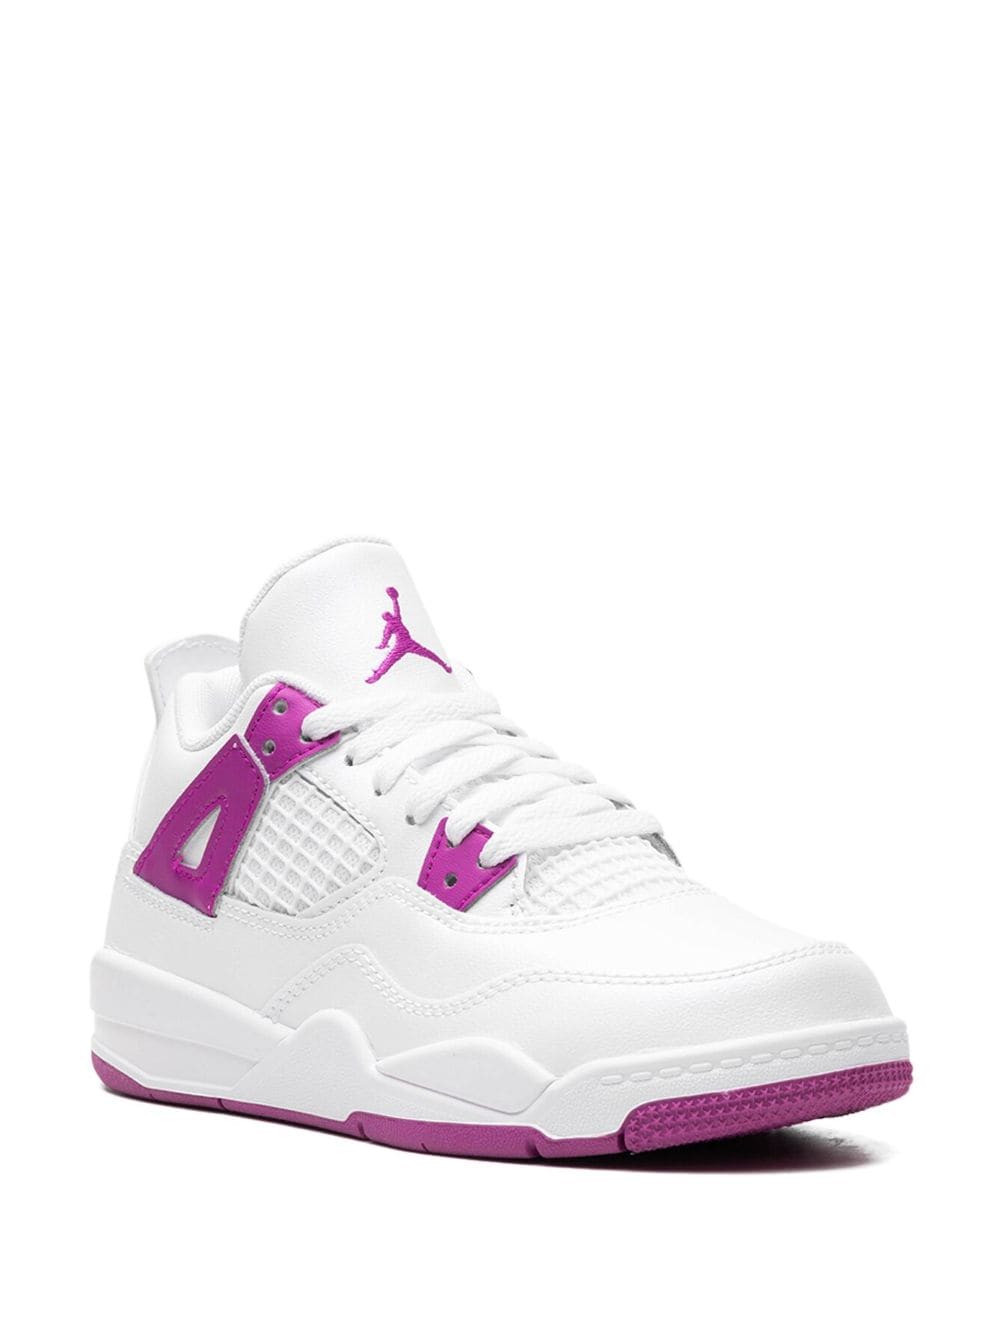 Jordan Kids Air Jordan 4 Retro PS "Hyper Violet" sneakers White